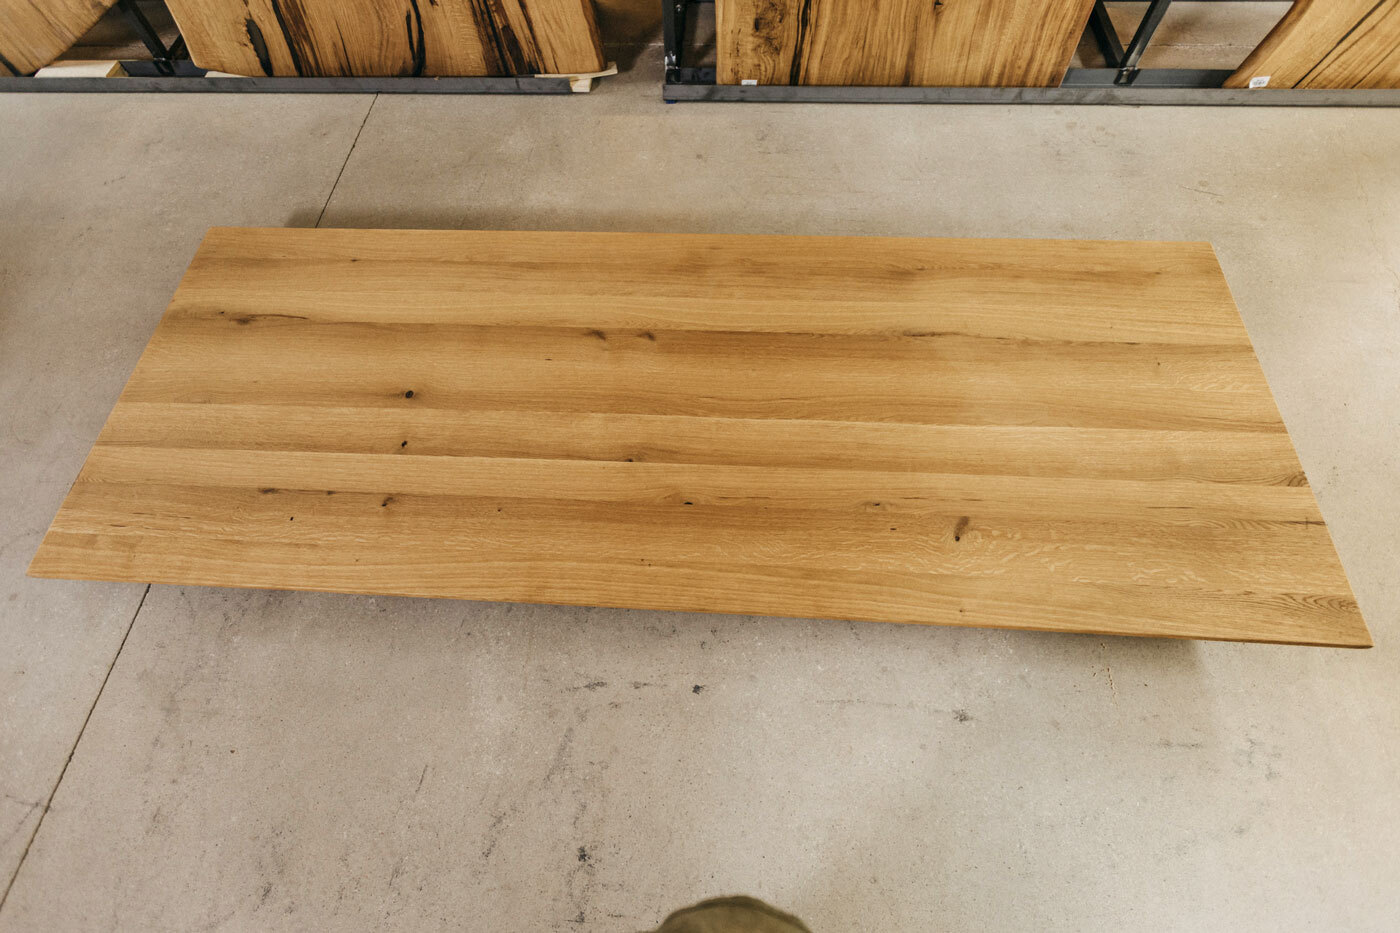 Massivholztischplatte aus Eiche mit schmalen Riegeln und wenig Astanteil in den Maßen 260x100 cm